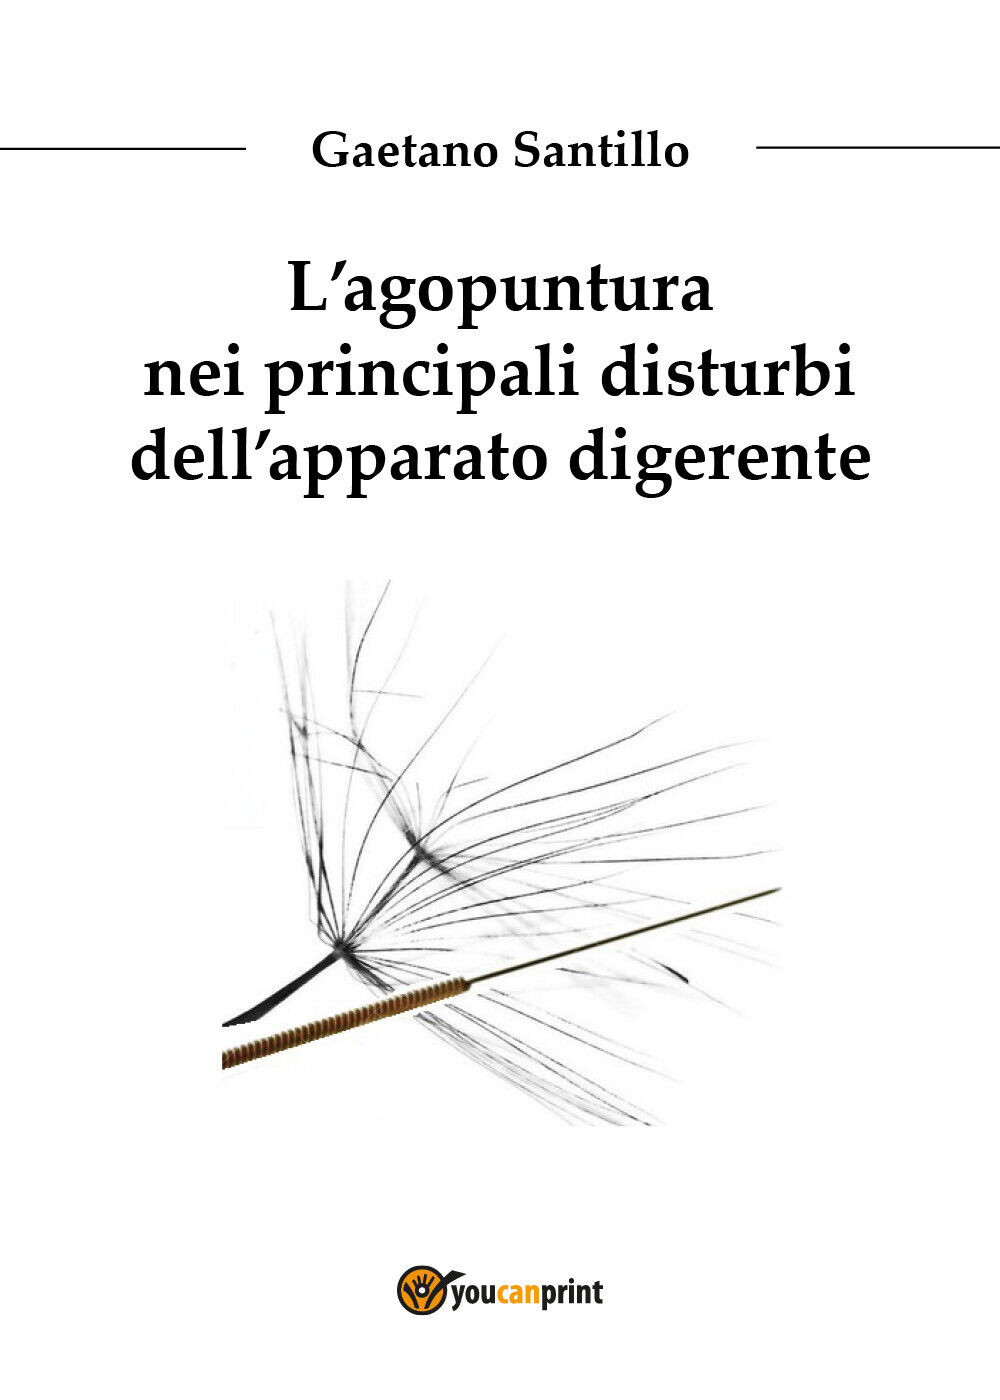 L'agopuntura nei principali disturbi delL'apparato digerente di Gaetano Santillo libro usato